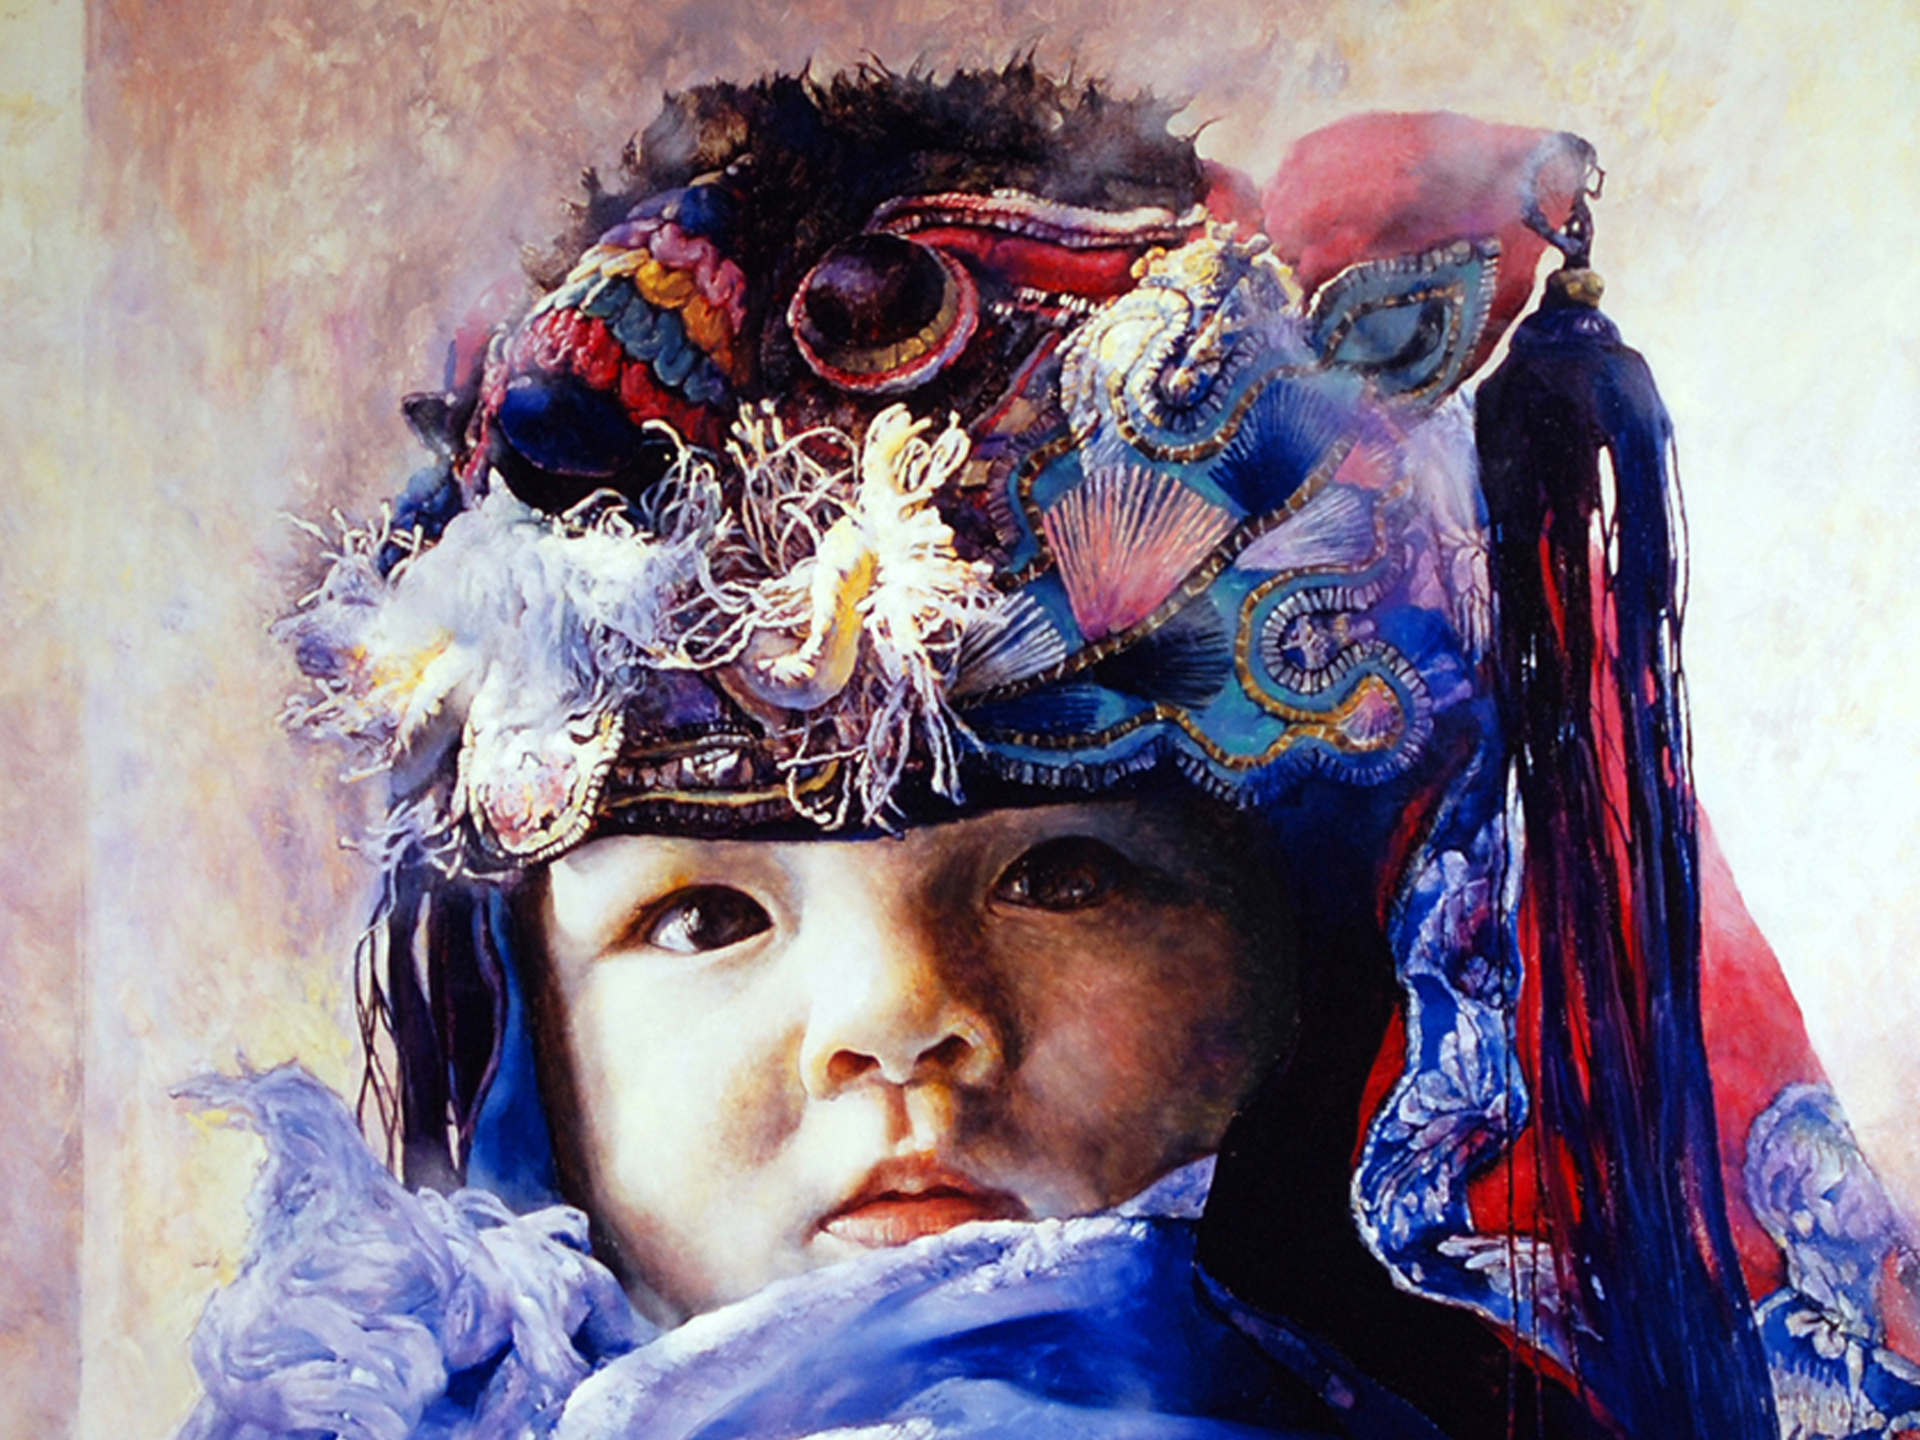 Print, "Baby in Blue" by Liu Derun